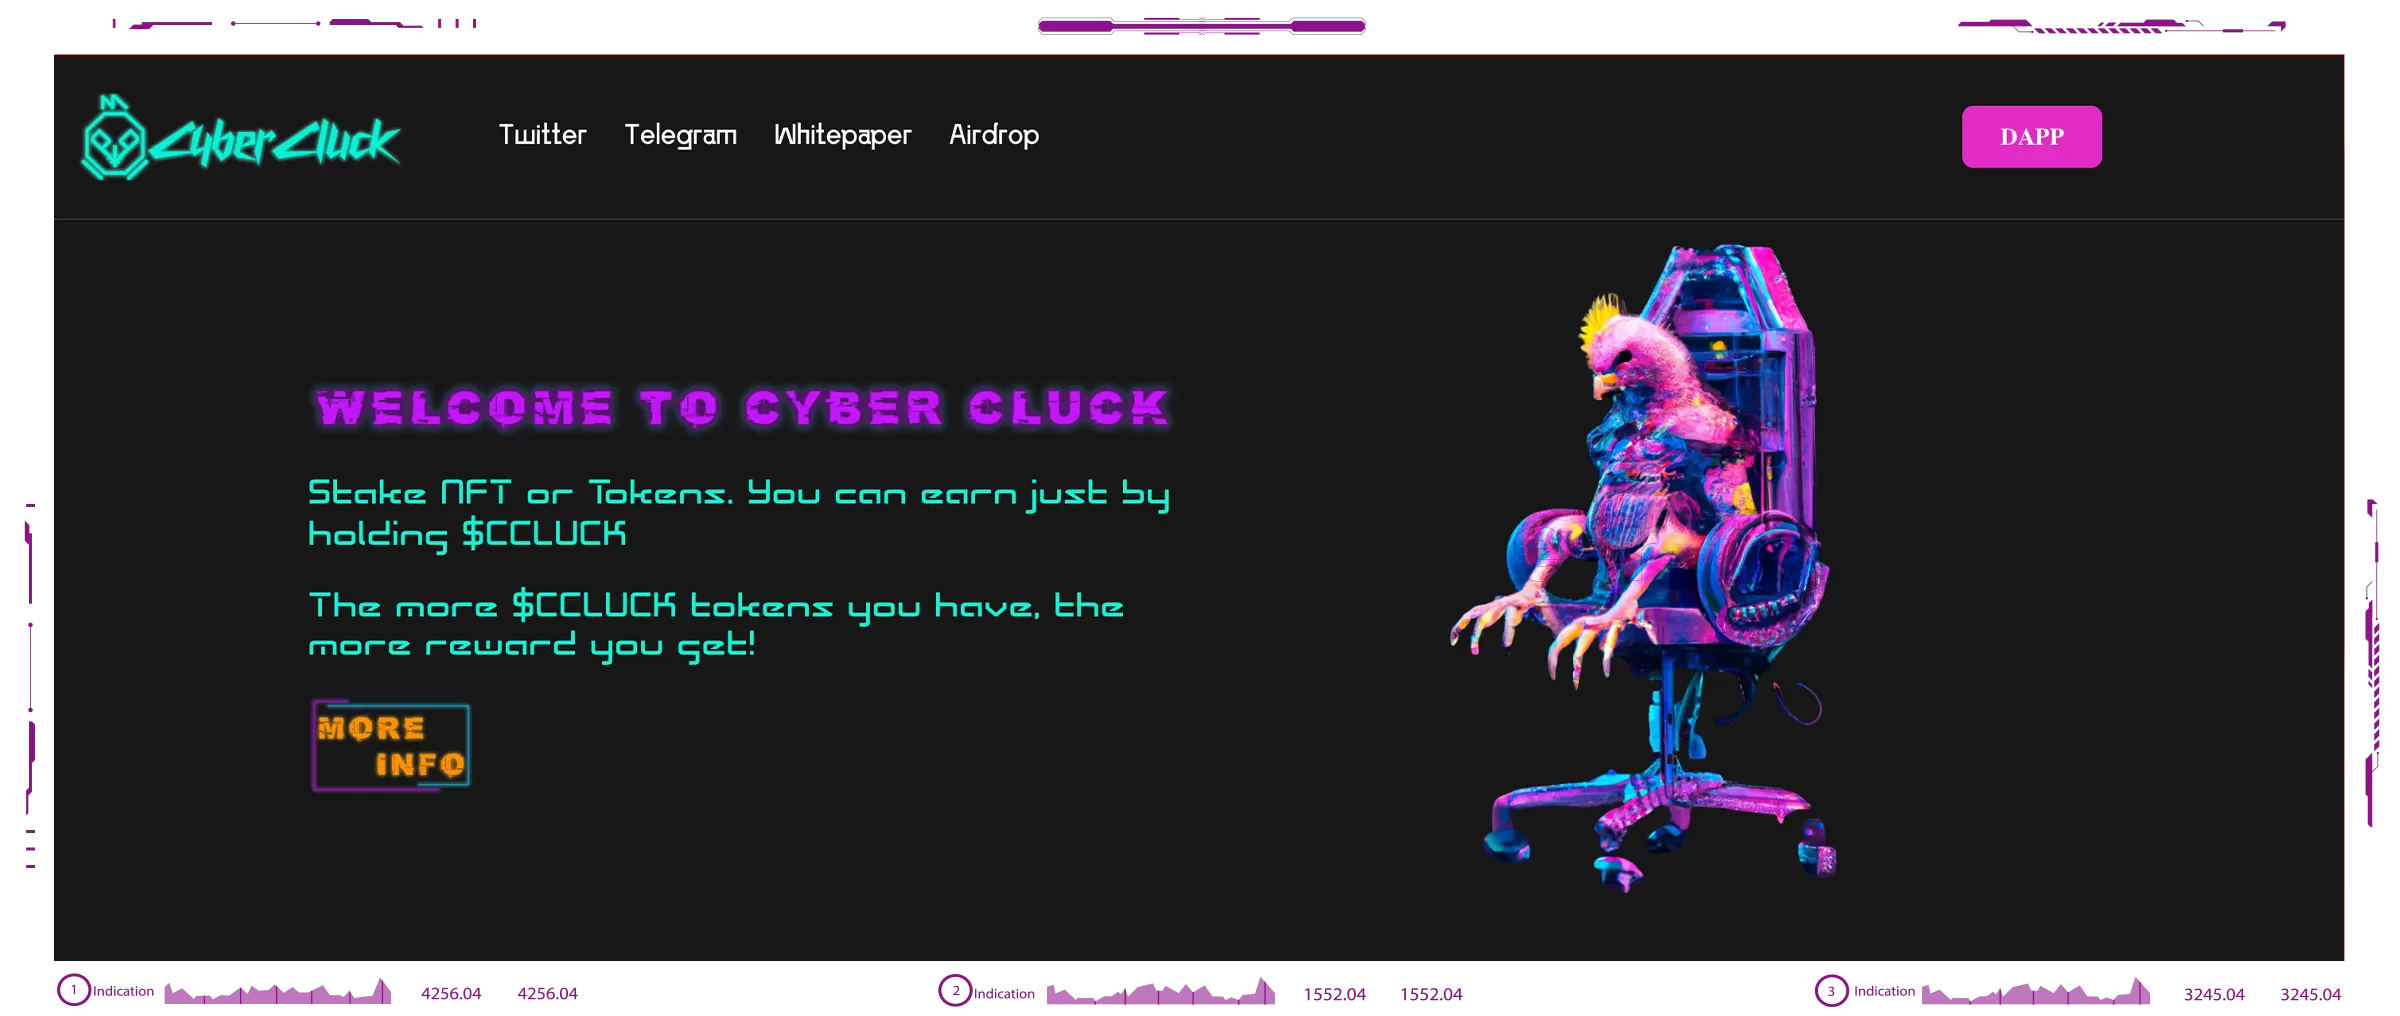 Cyber Cluck dapps